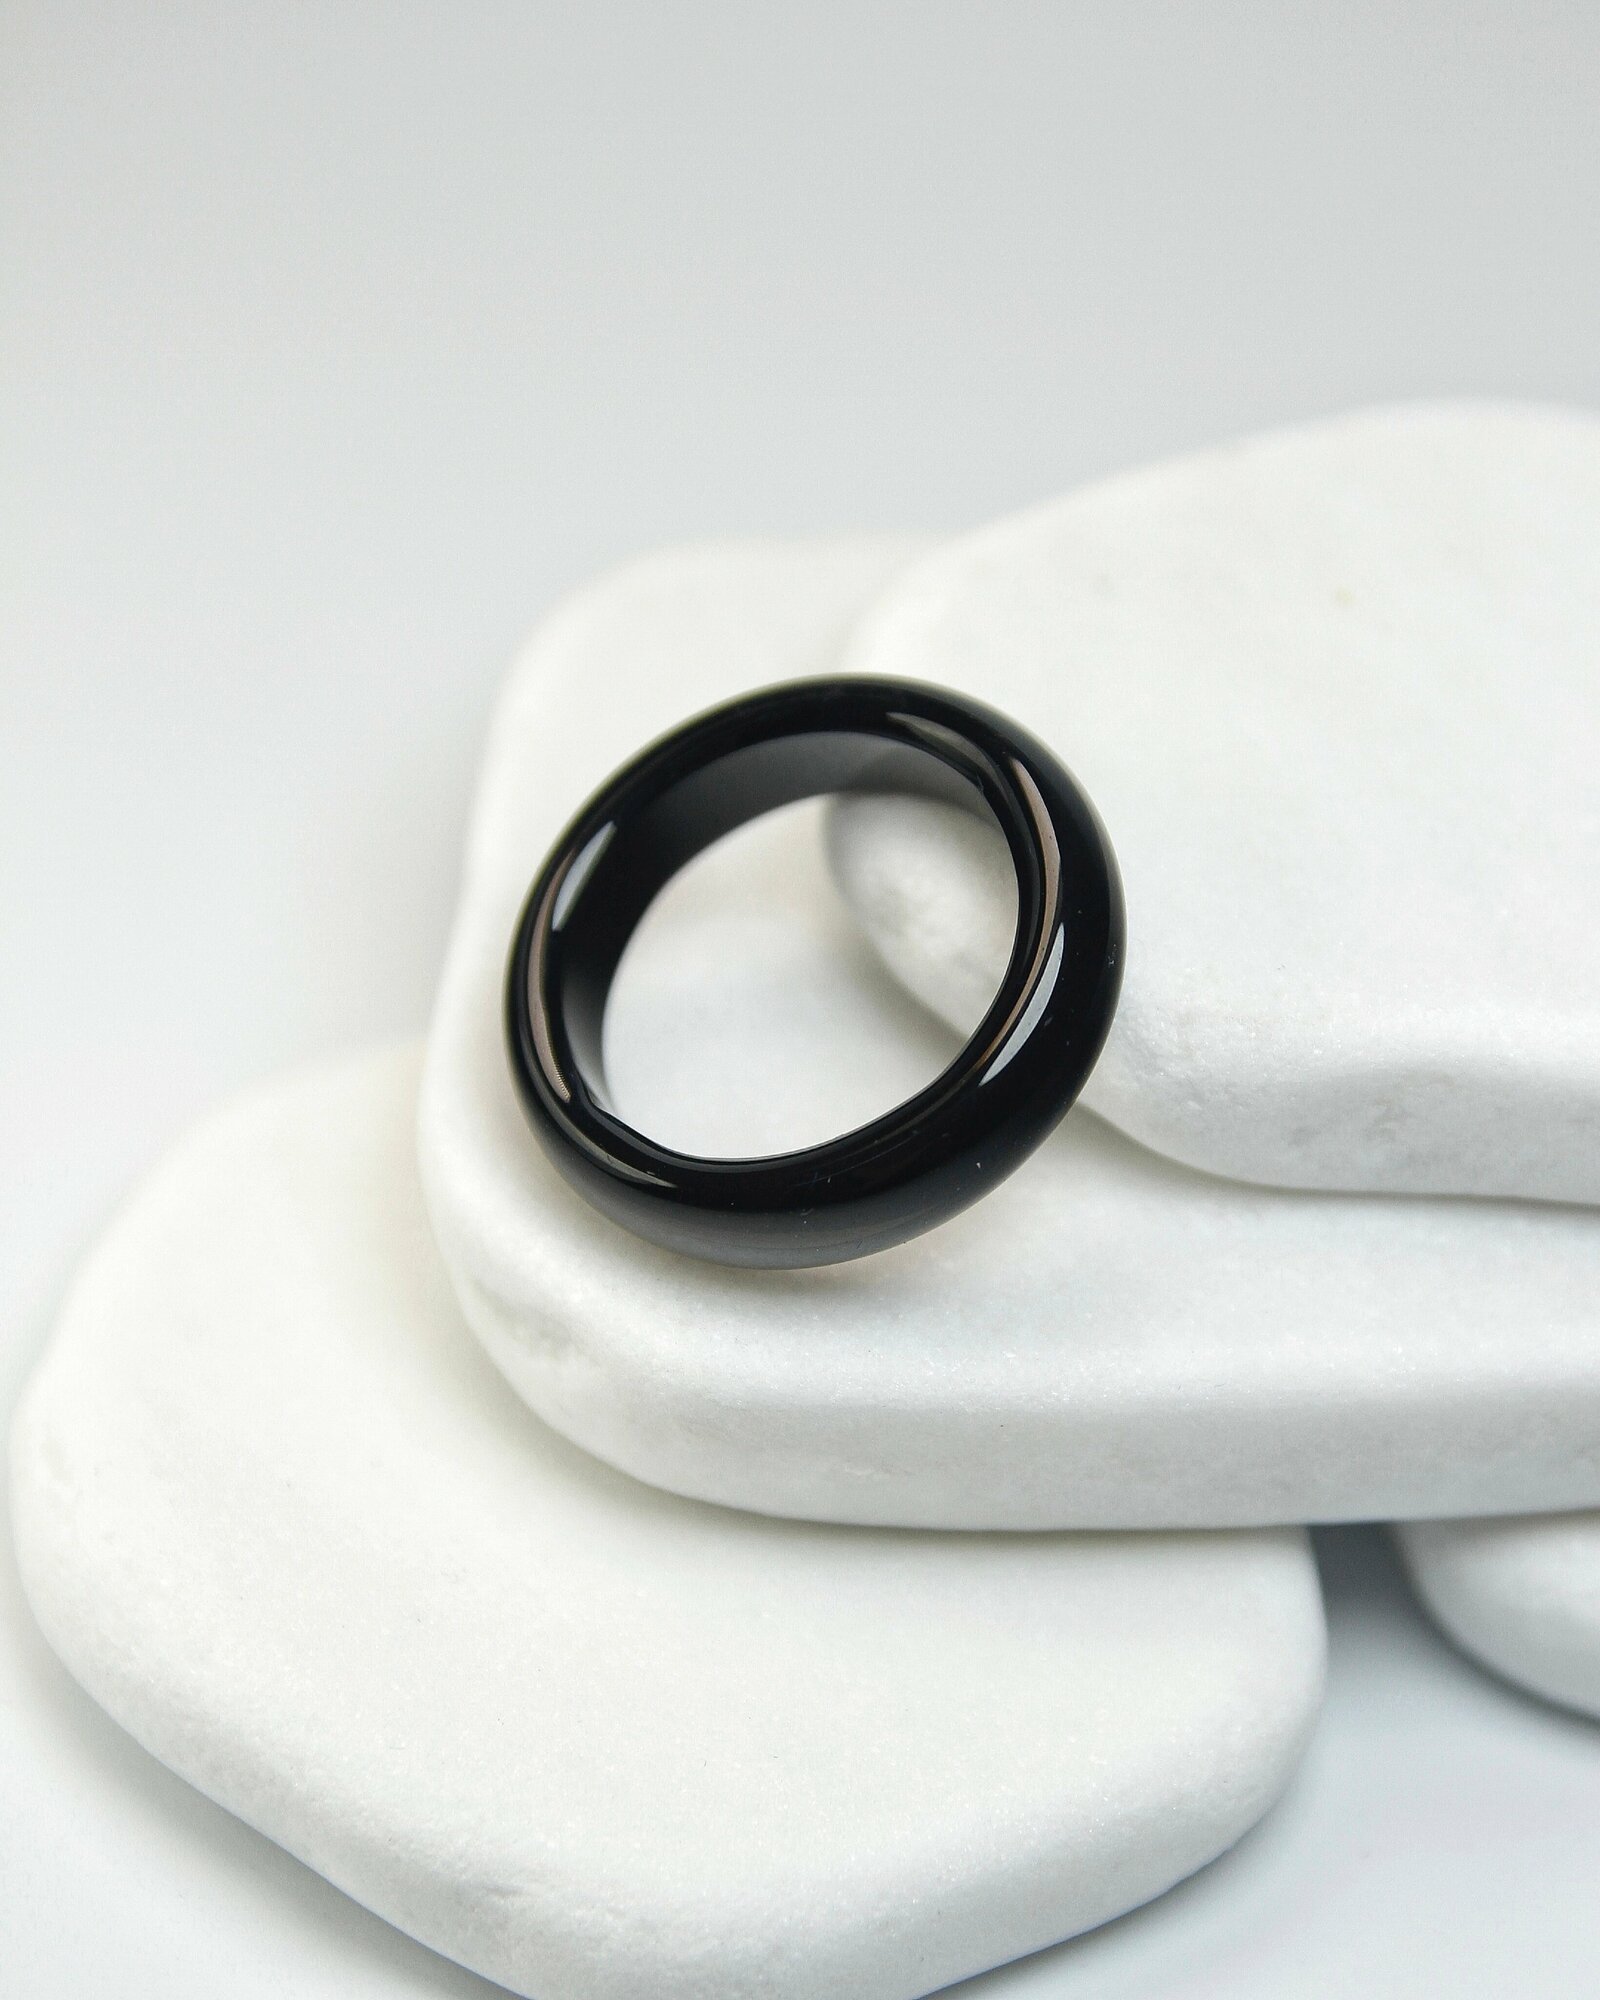 Кольцо-кулон Grow Up Кольцо из натурального камня Черный агат, для душевного равновесия, размер 16-17, агат